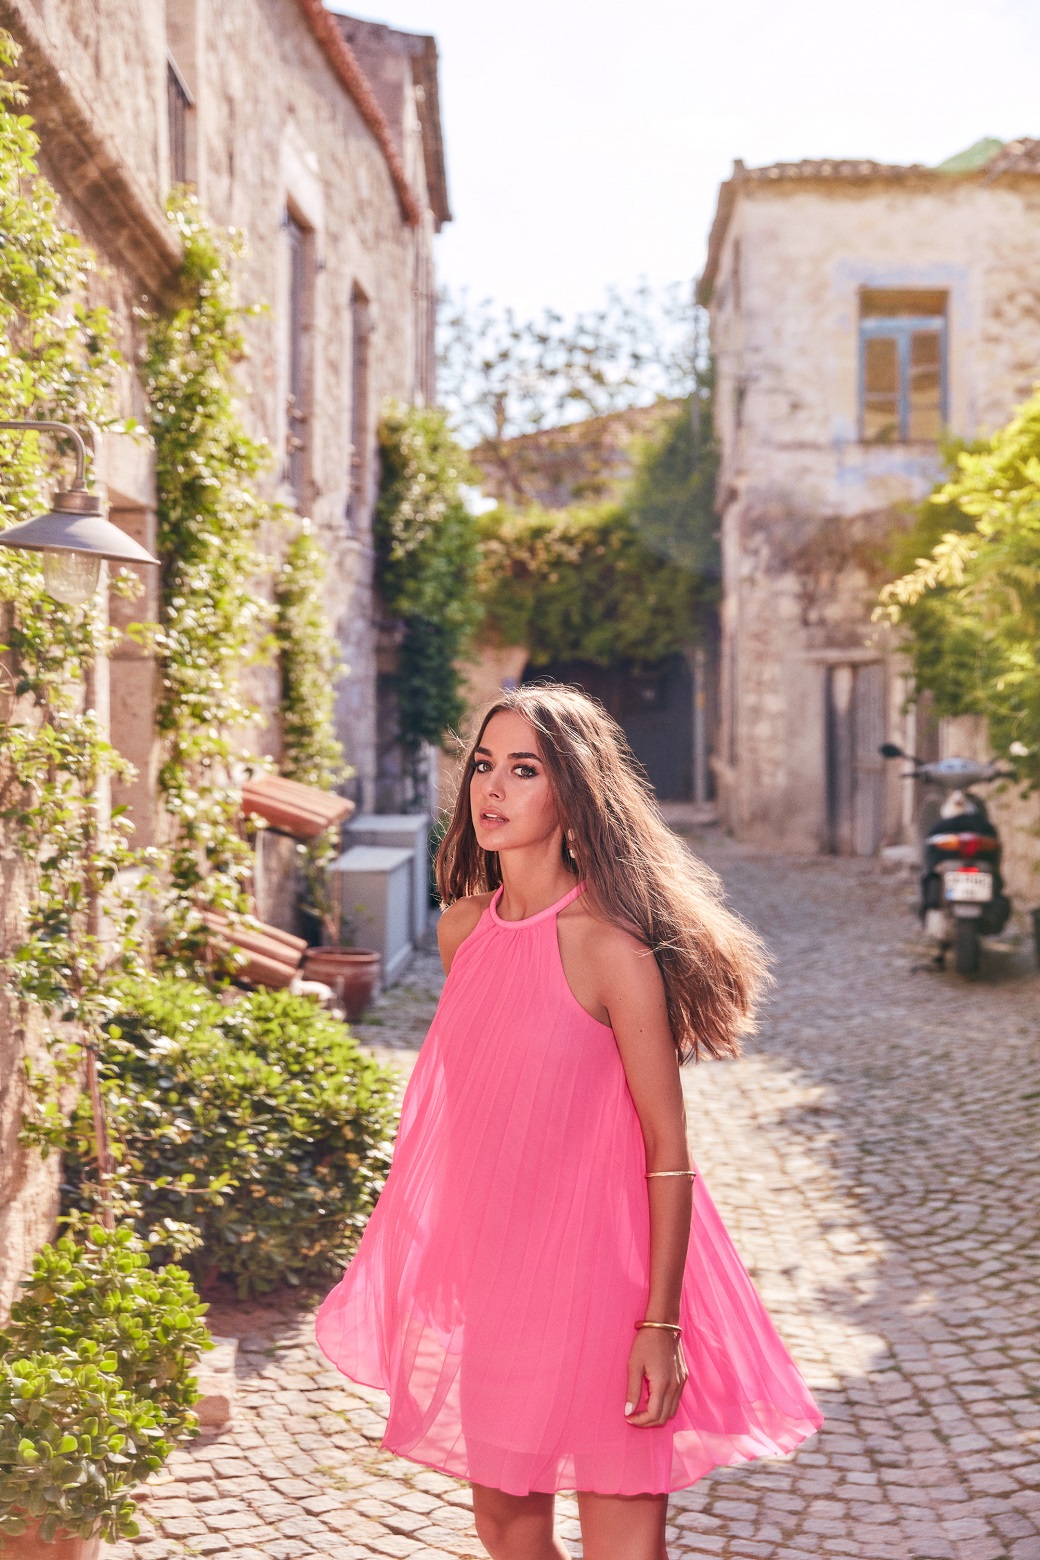 Monet overseas sick Elbise Kampanyası için Alaçatı Sokaklarını Fethetti - Magazin - Öncü Şehir  Gazetesi